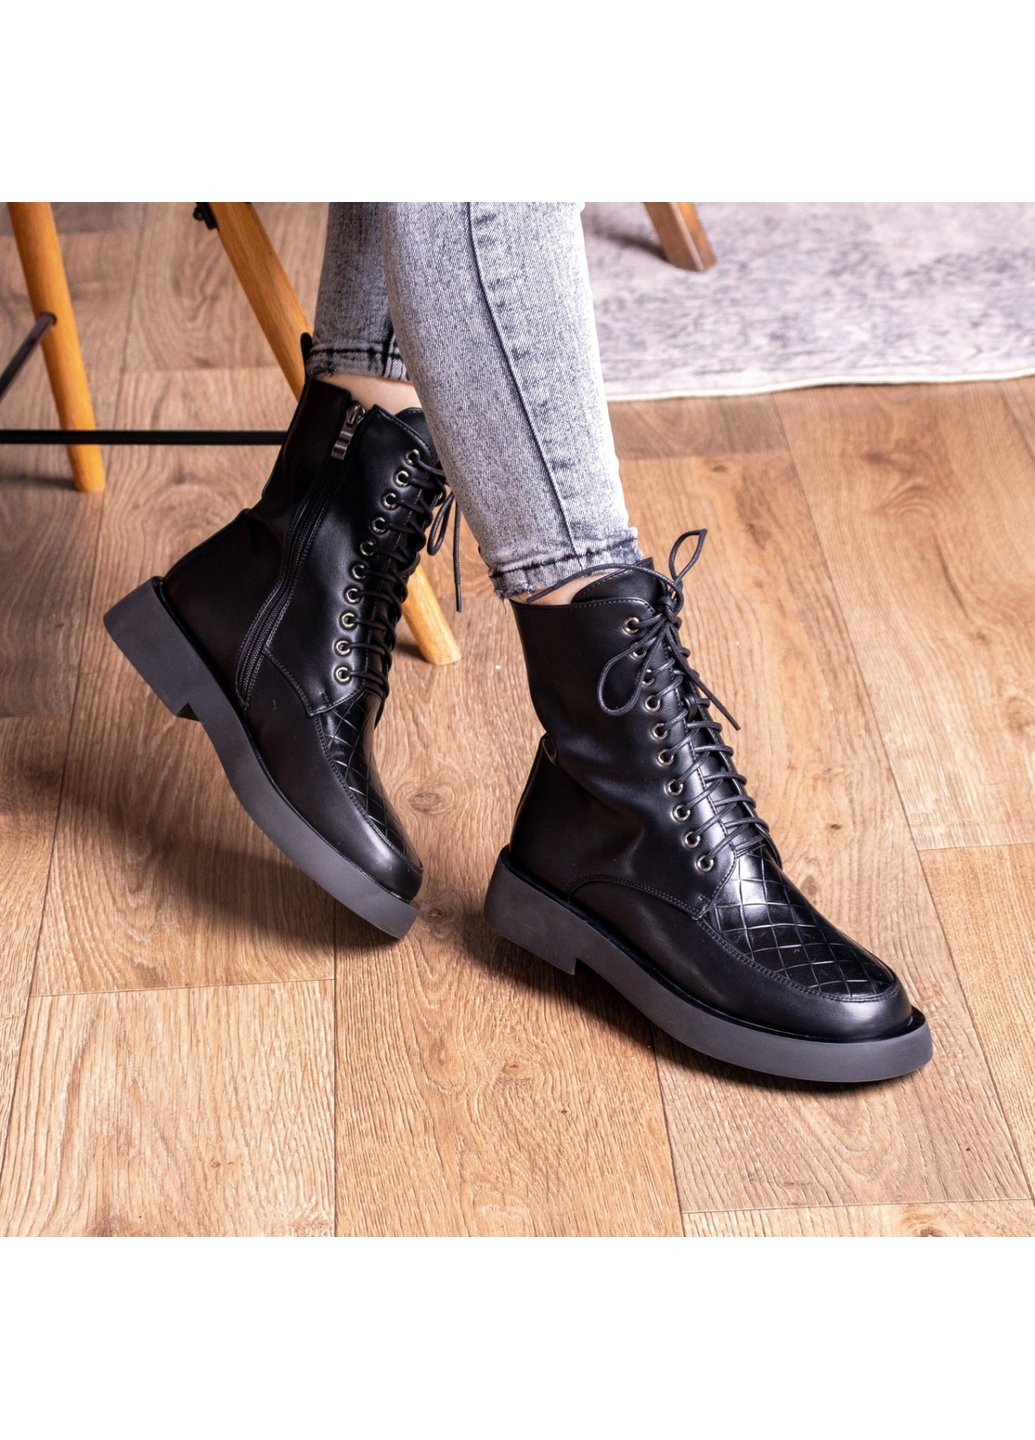 Осенние ботинки женские tootsie 2409 235 черный Fashion из искусственной кожи